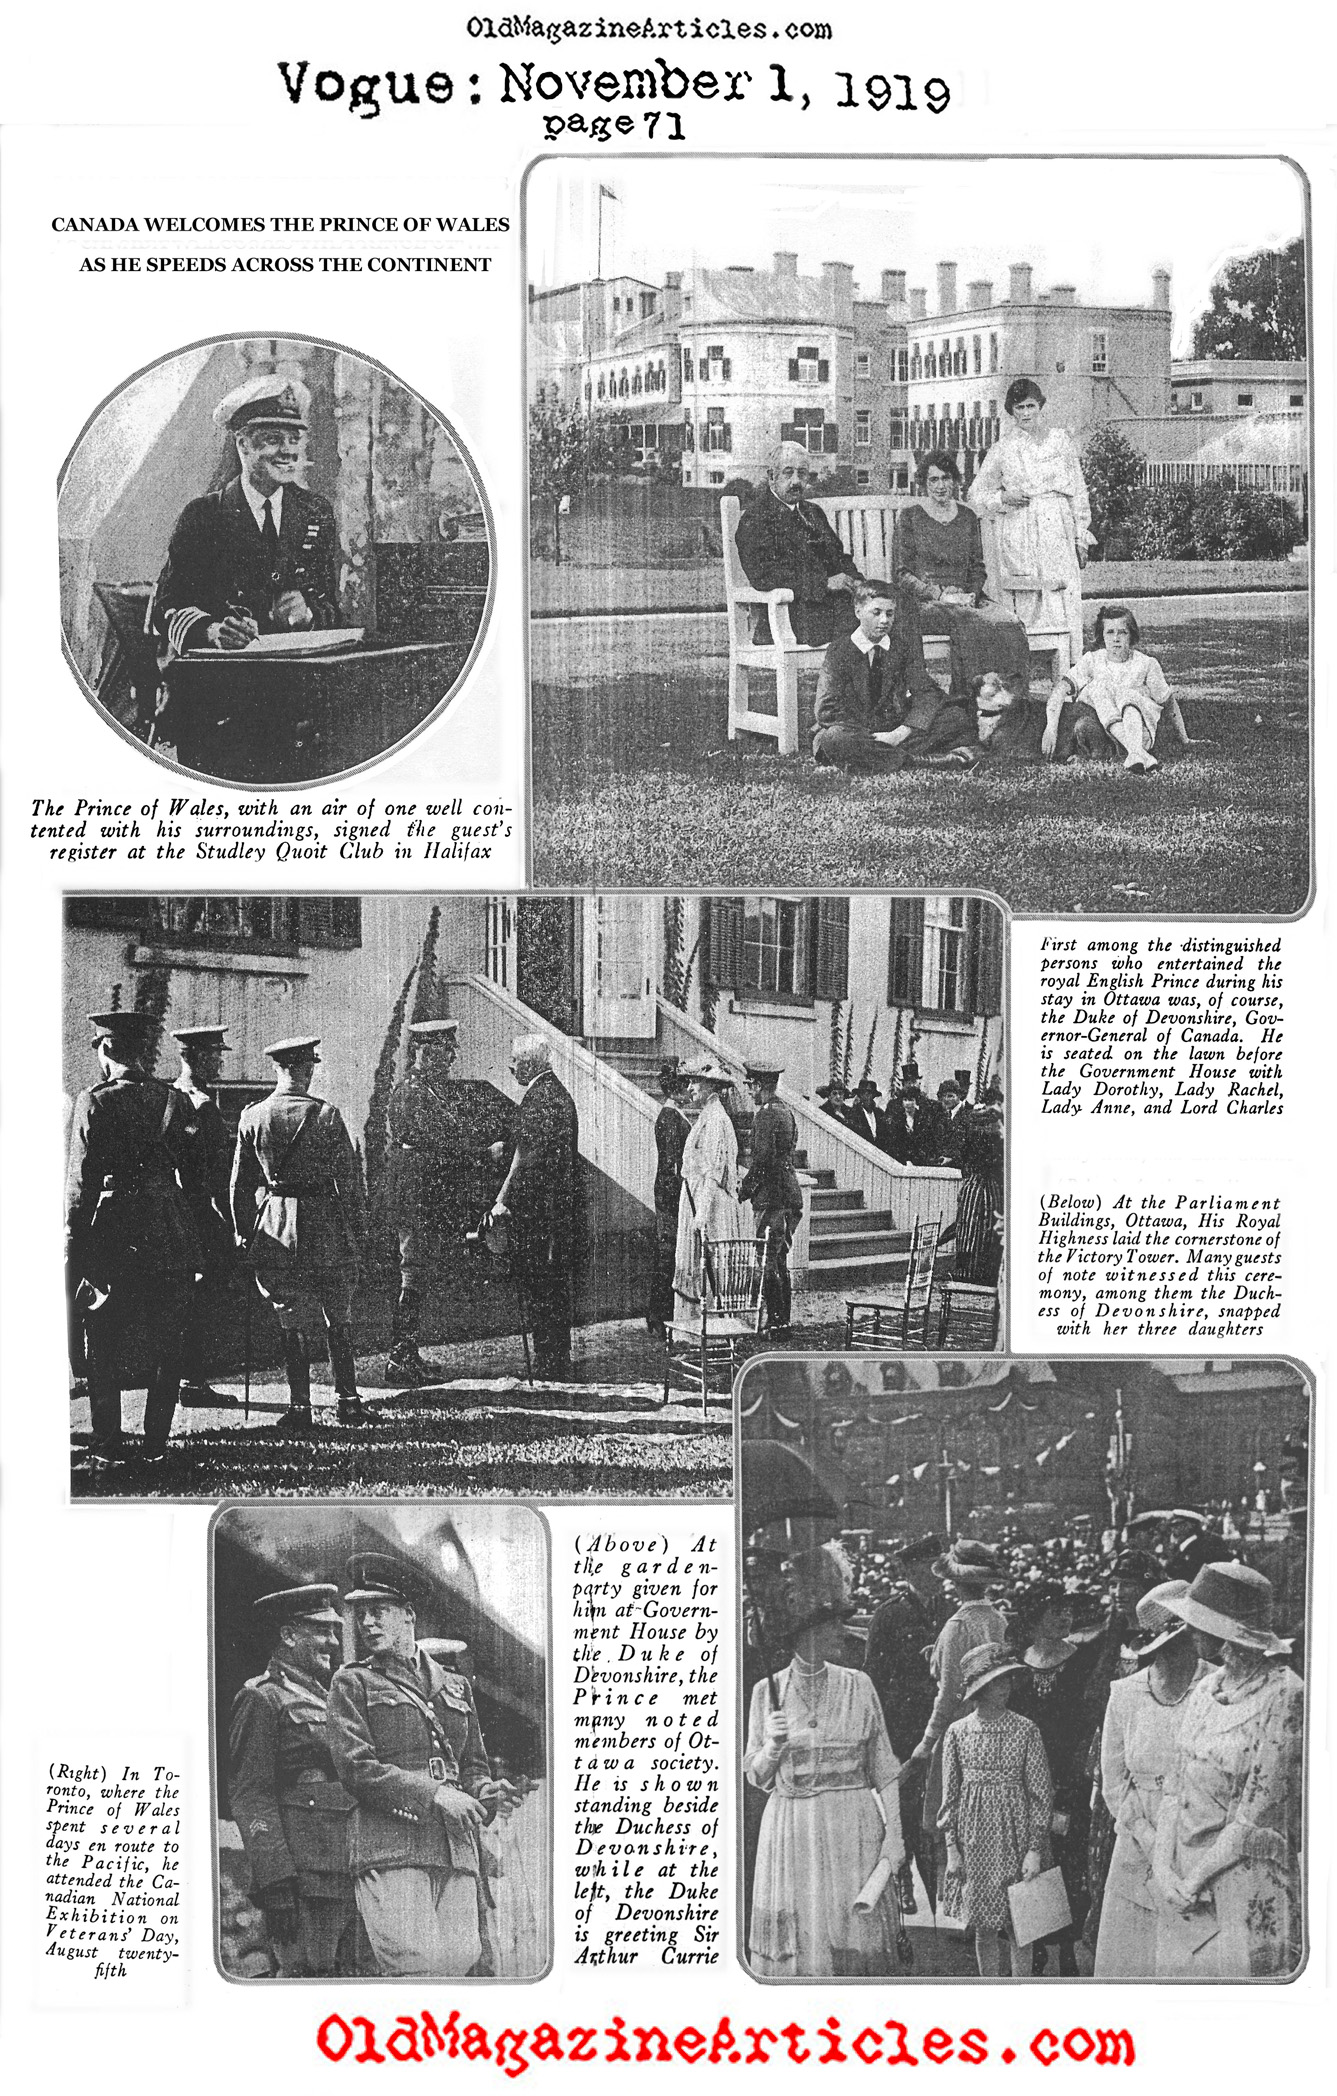 Edward VIII in Ottawa (Vogue Magazine, 1919)